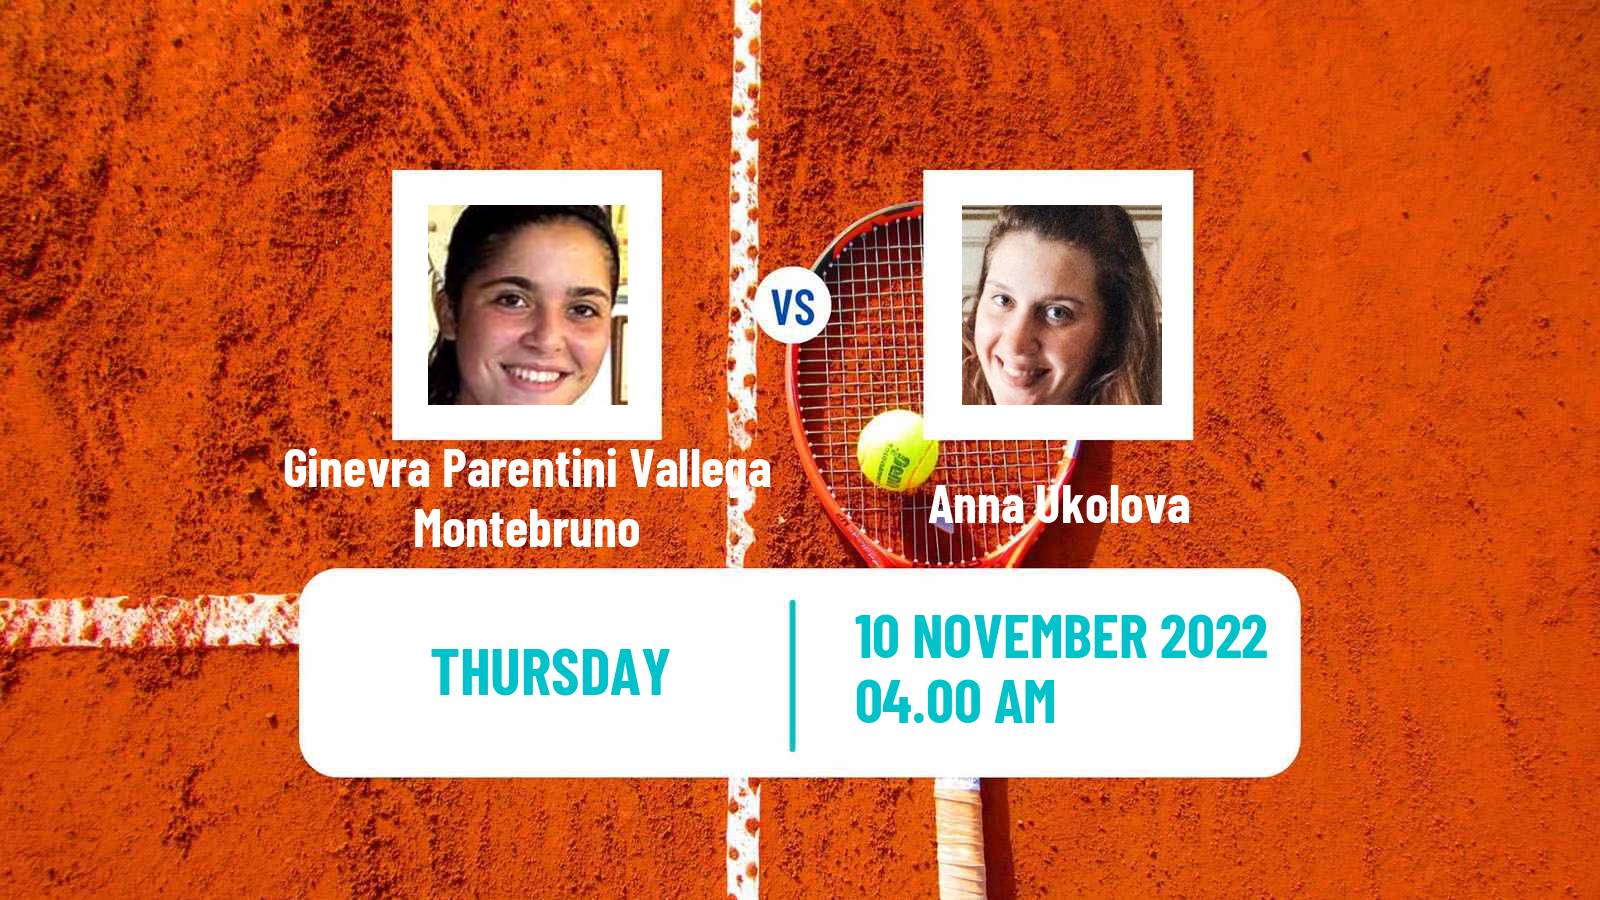 Tennis ITF Tournaments Ginevra Parentini Vallega Montebruno - Anna Ukolova